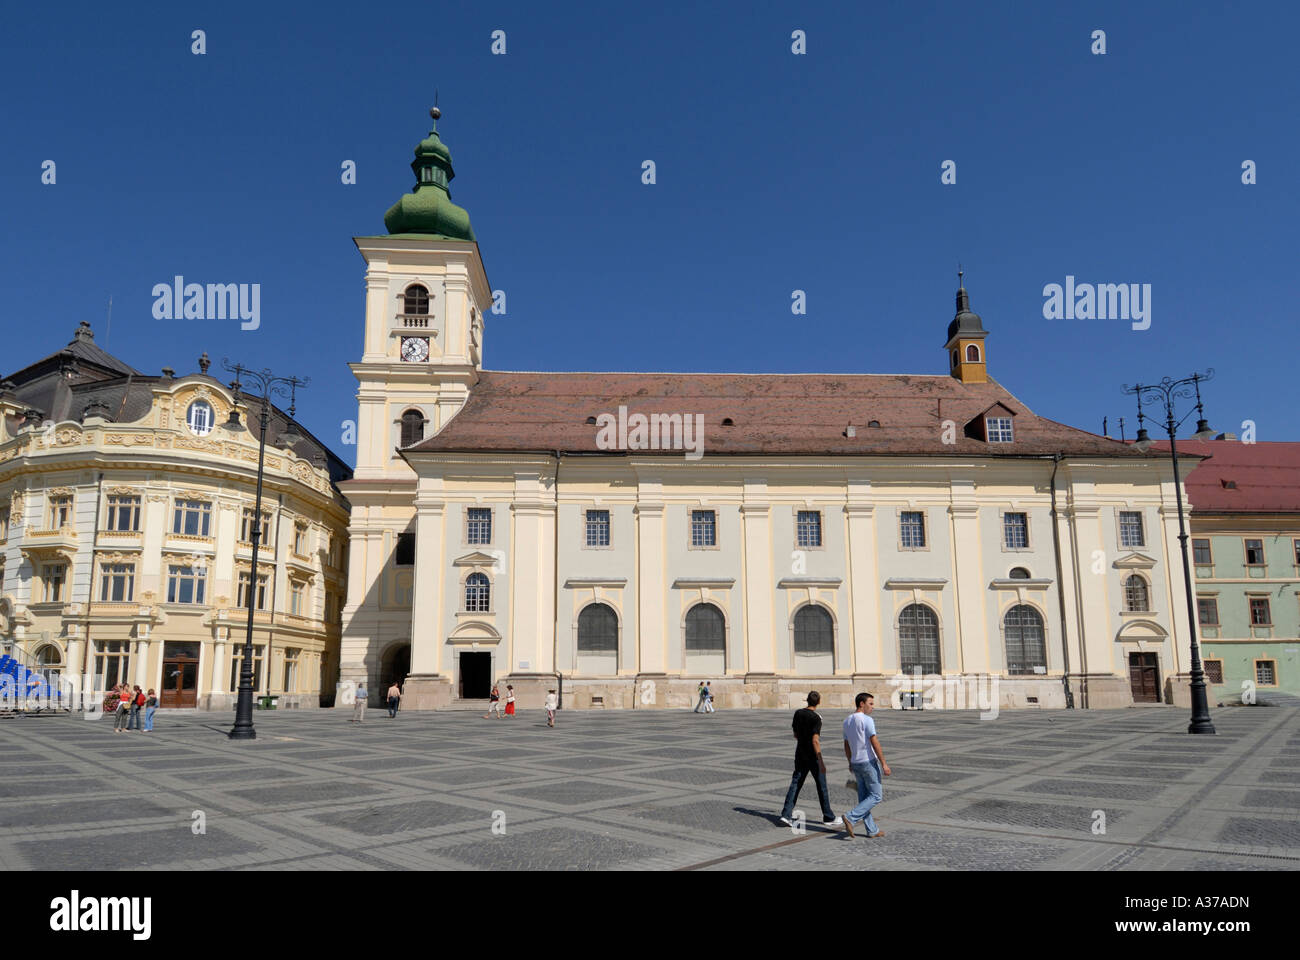 Roumanie Sibiu. Capitale européenne de la Culture 2007. Église catholique romaine (1733) de style baroque à Piata Mare. Banque D'Images